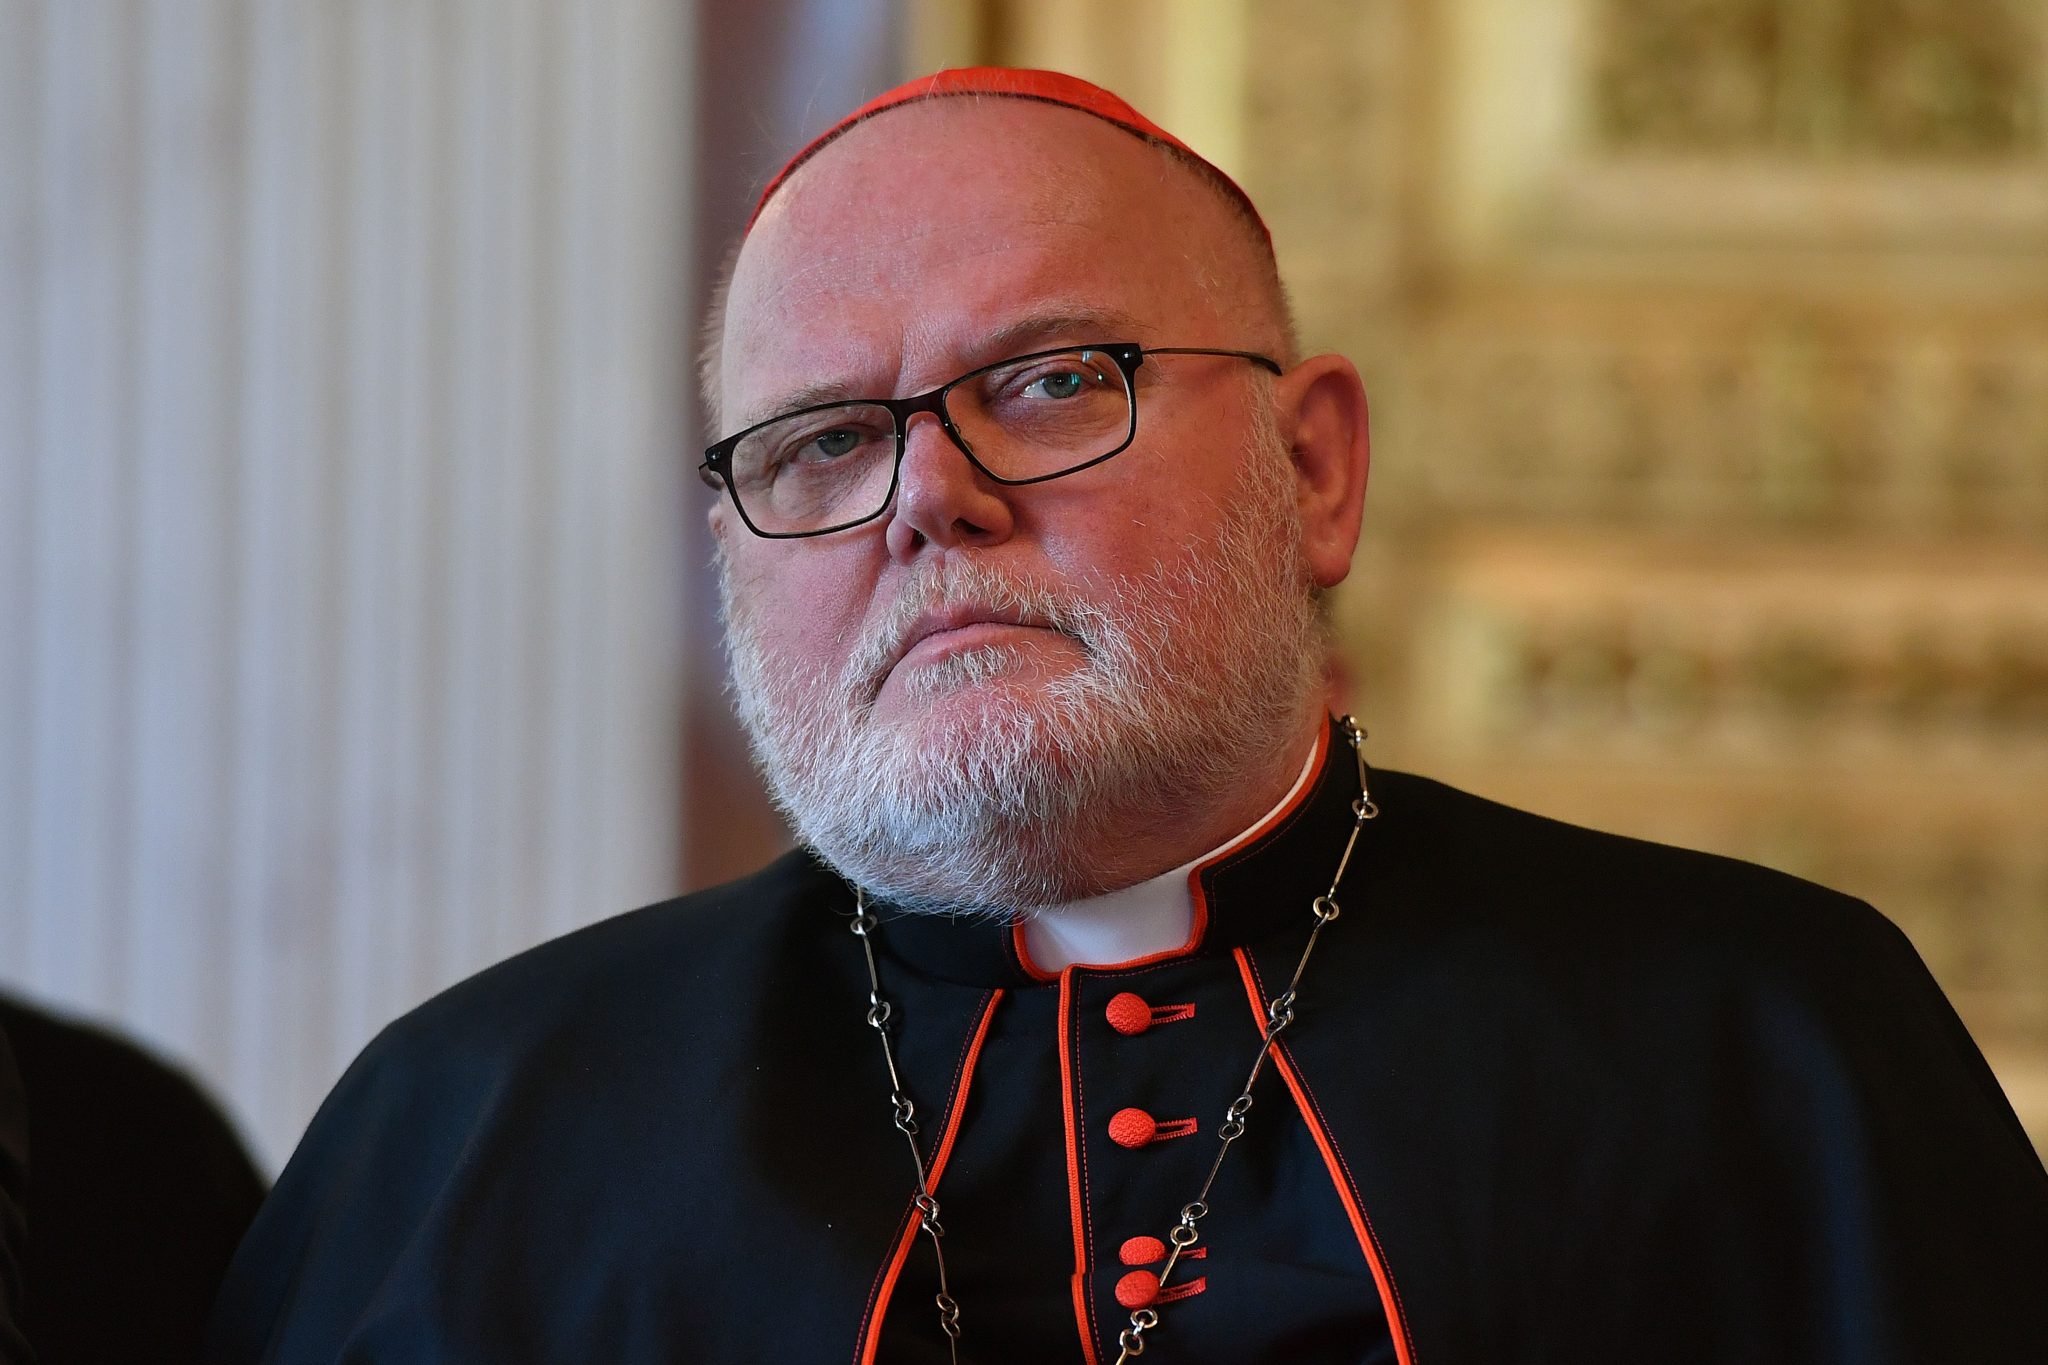 Reinhard Kardinal Marx bietet seinen Rücktritt als Bischof von München und Freising an Foto: picture alliance / SvenSimon | FrankHoermann/SVEN SIMON